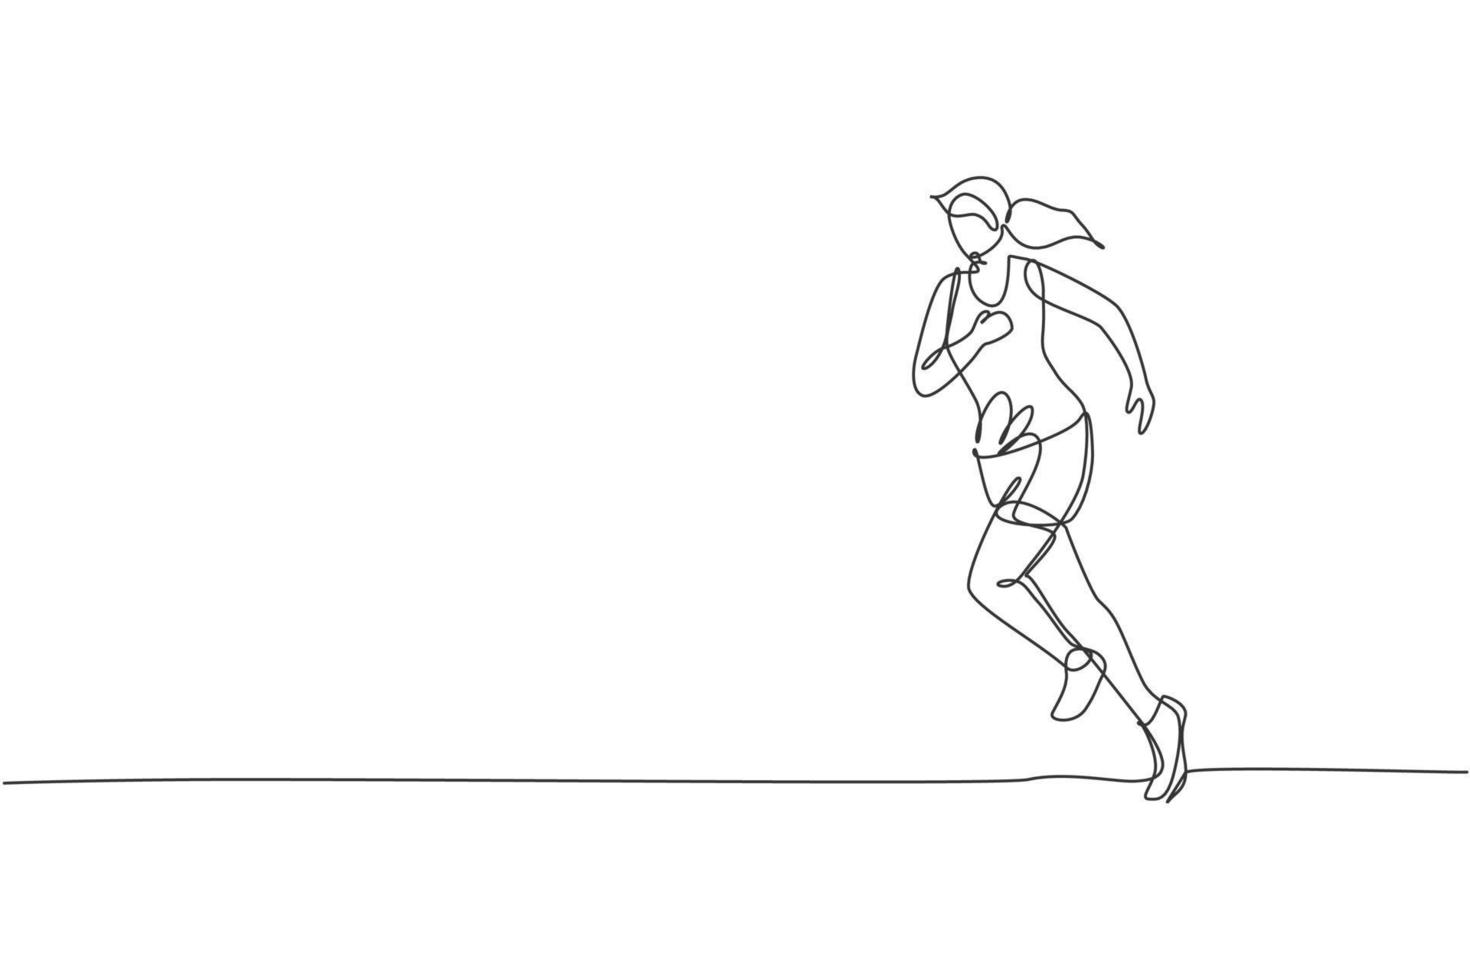 enkele doorlopende lijntekening van jonge behendige vrouw runner rennen ontspannen. individuele sport met competitieconcept. trendy eenregelig ontwerp vectorillustratie voor het uitvoeren van toernooipromotie vector